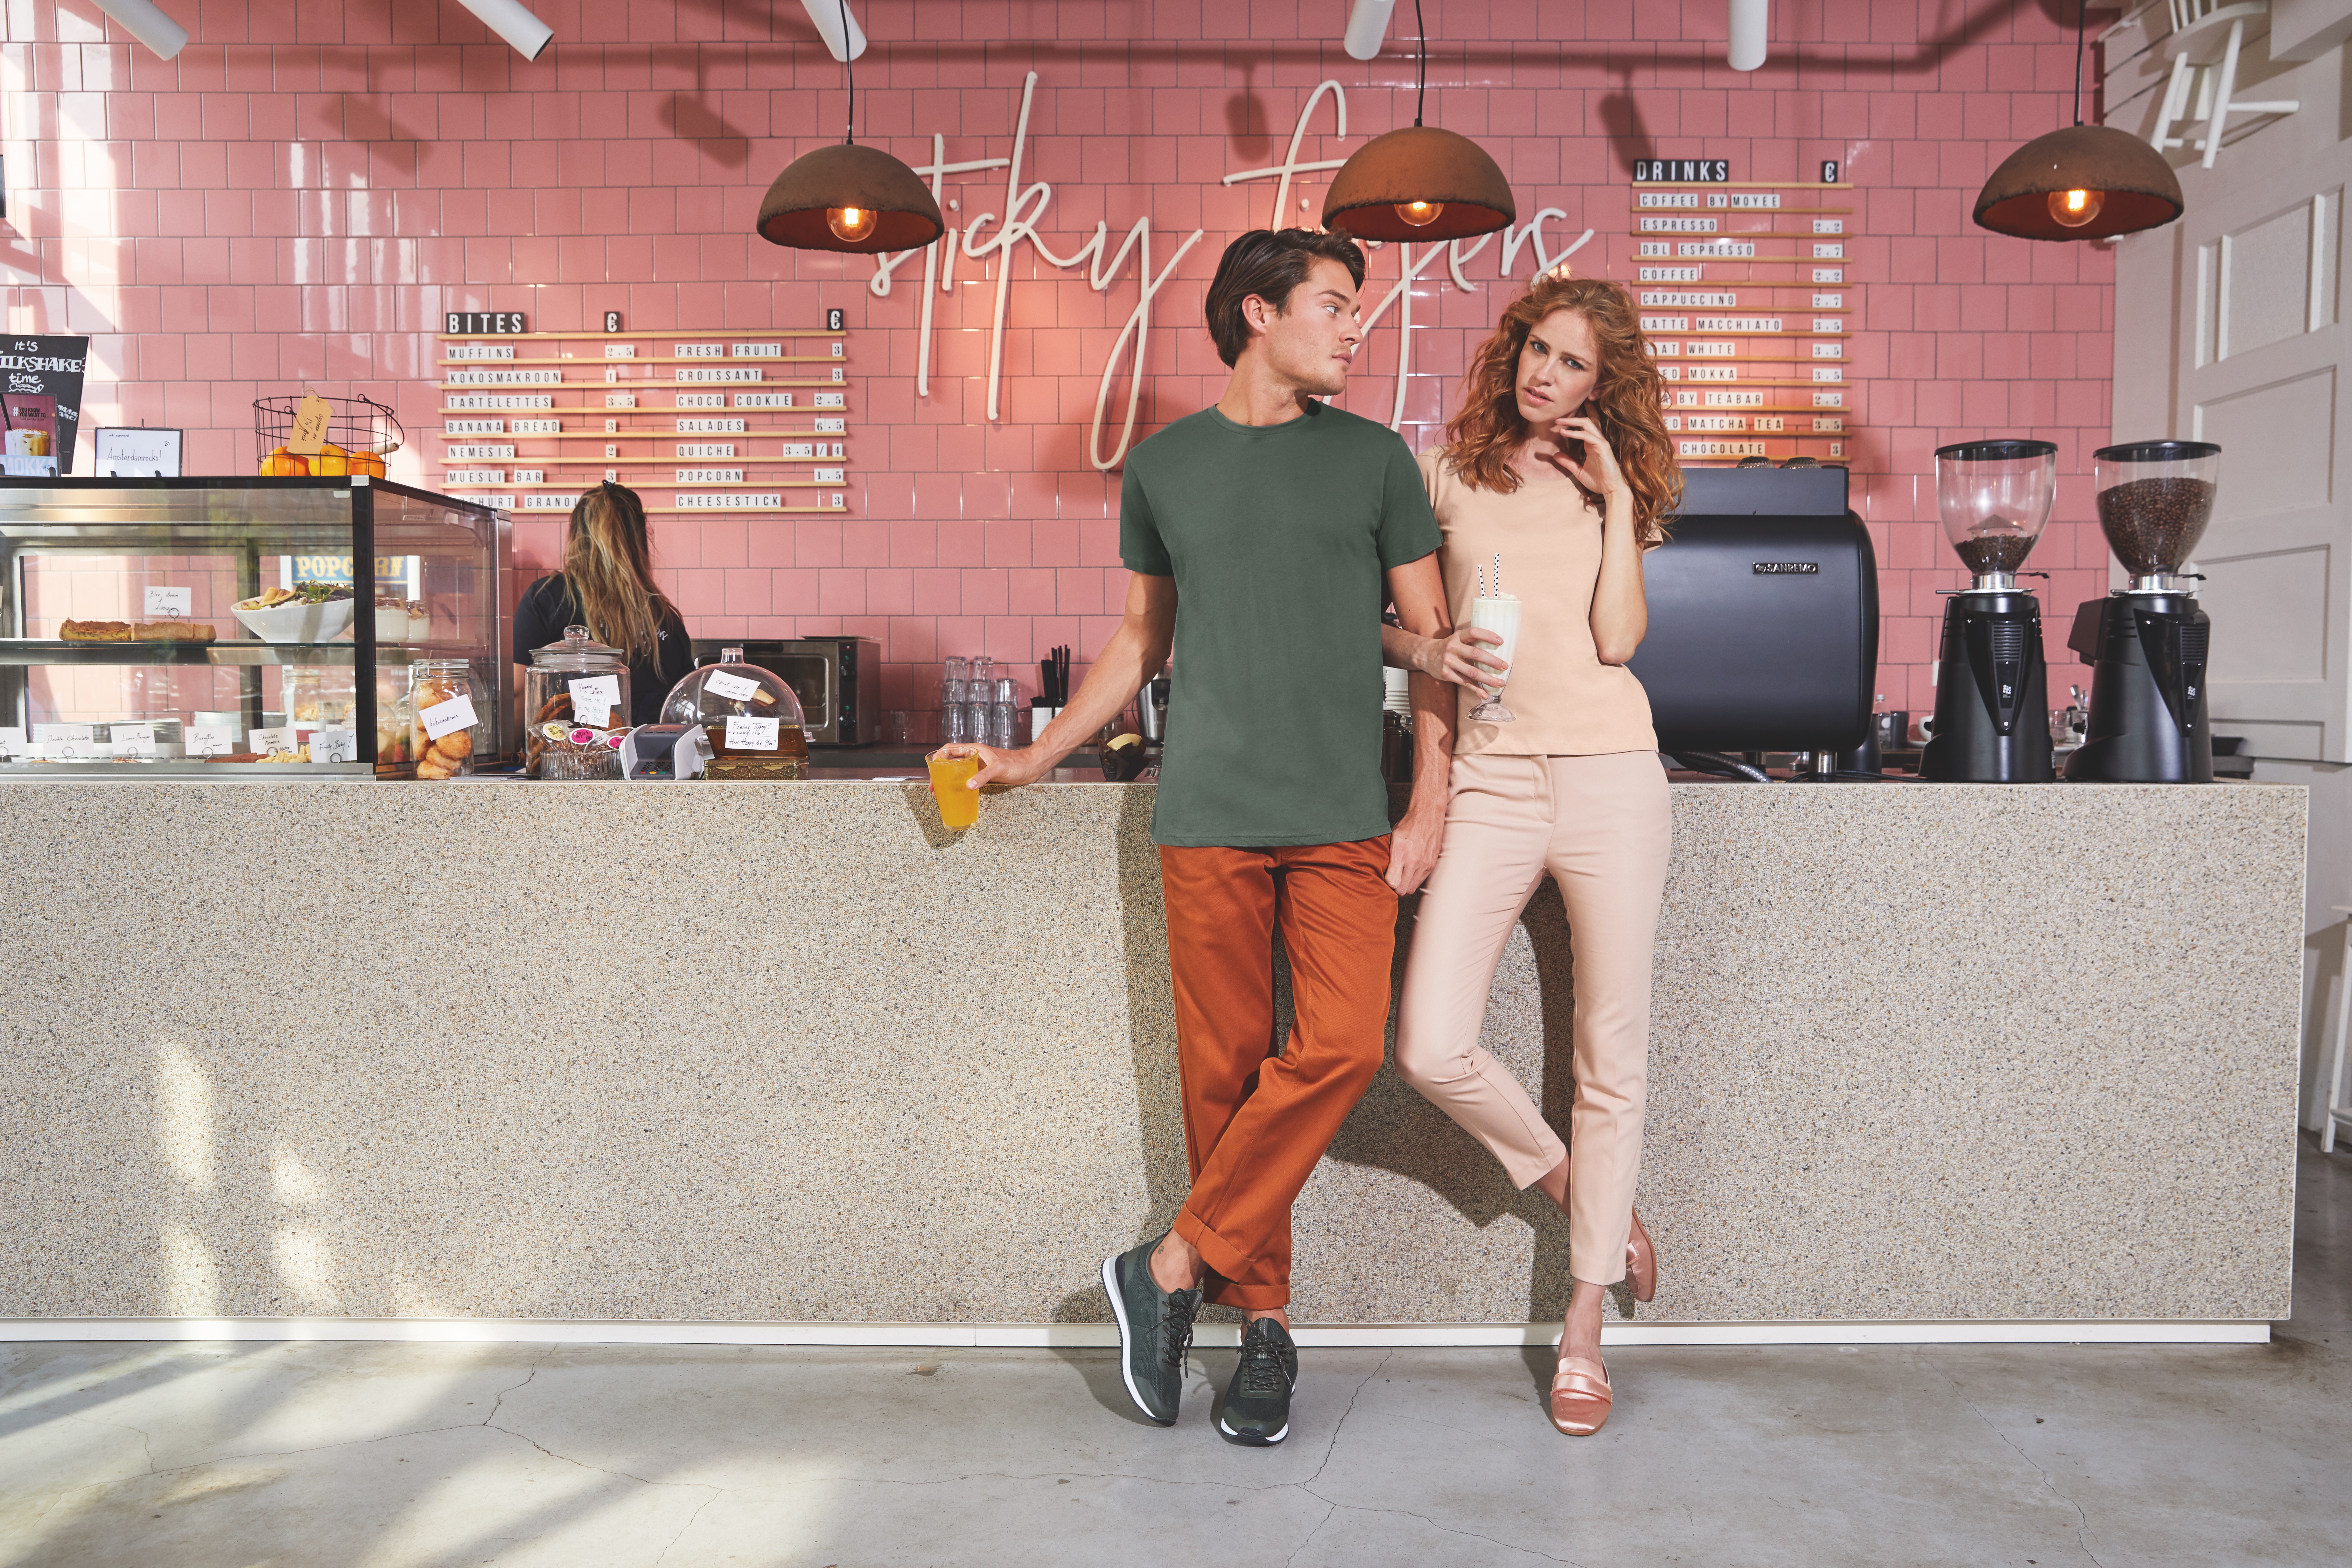 Ein Mann und eine Frau stehen in einem Cafe an der Bar. Im Hintergrund sind rosa Kacheln mit dem Titel "sticky fingers". Beide halten ein Getränk in der Hand.